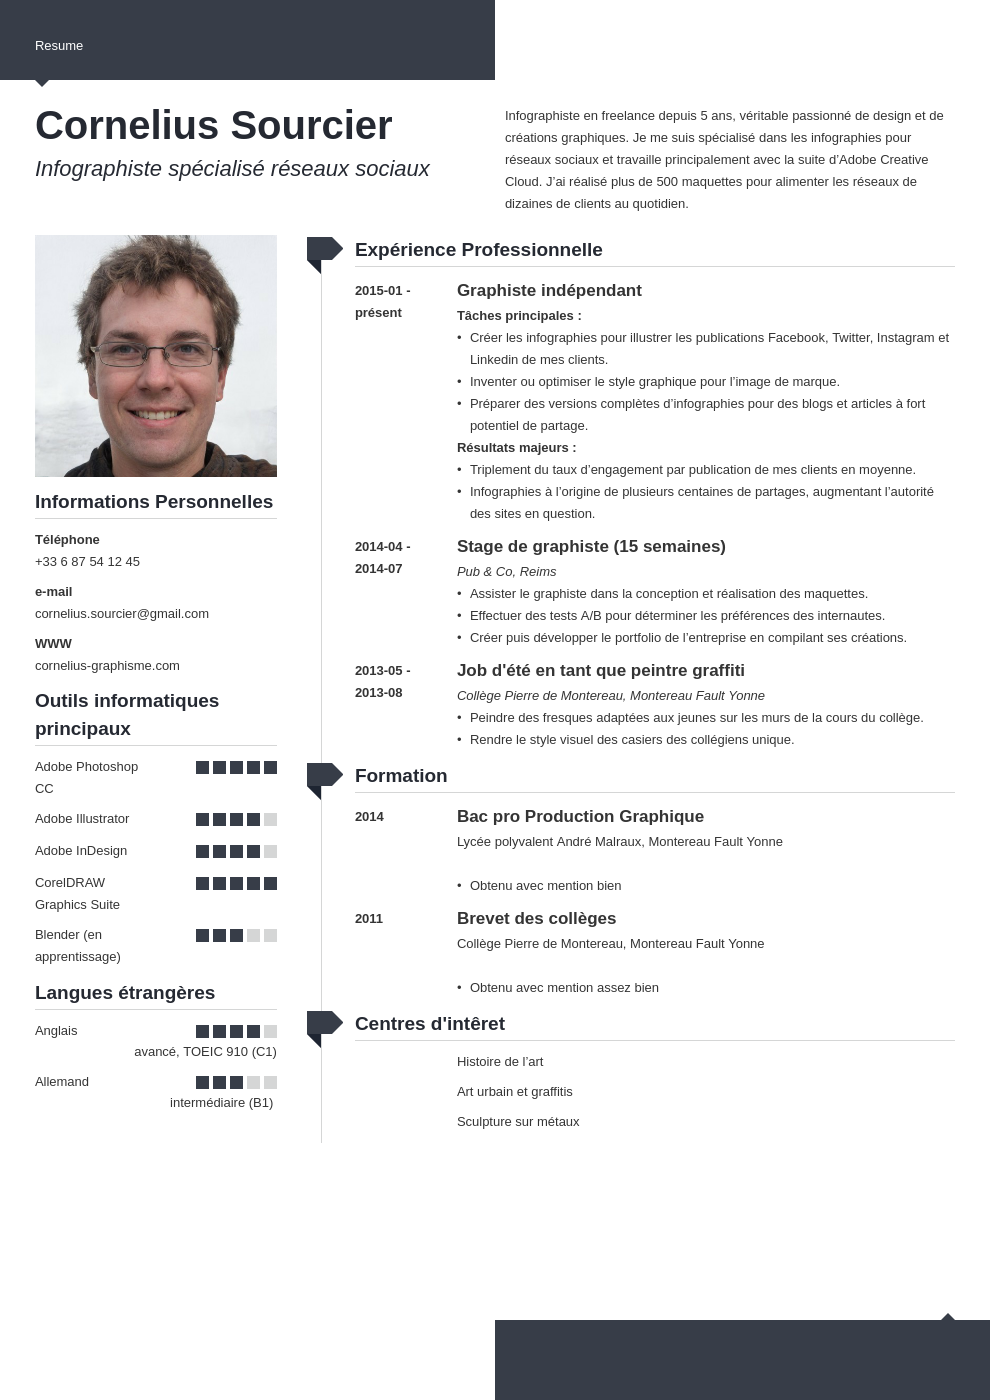 CV infographiste  exemple pour tout rôle (freelance, 3D...)